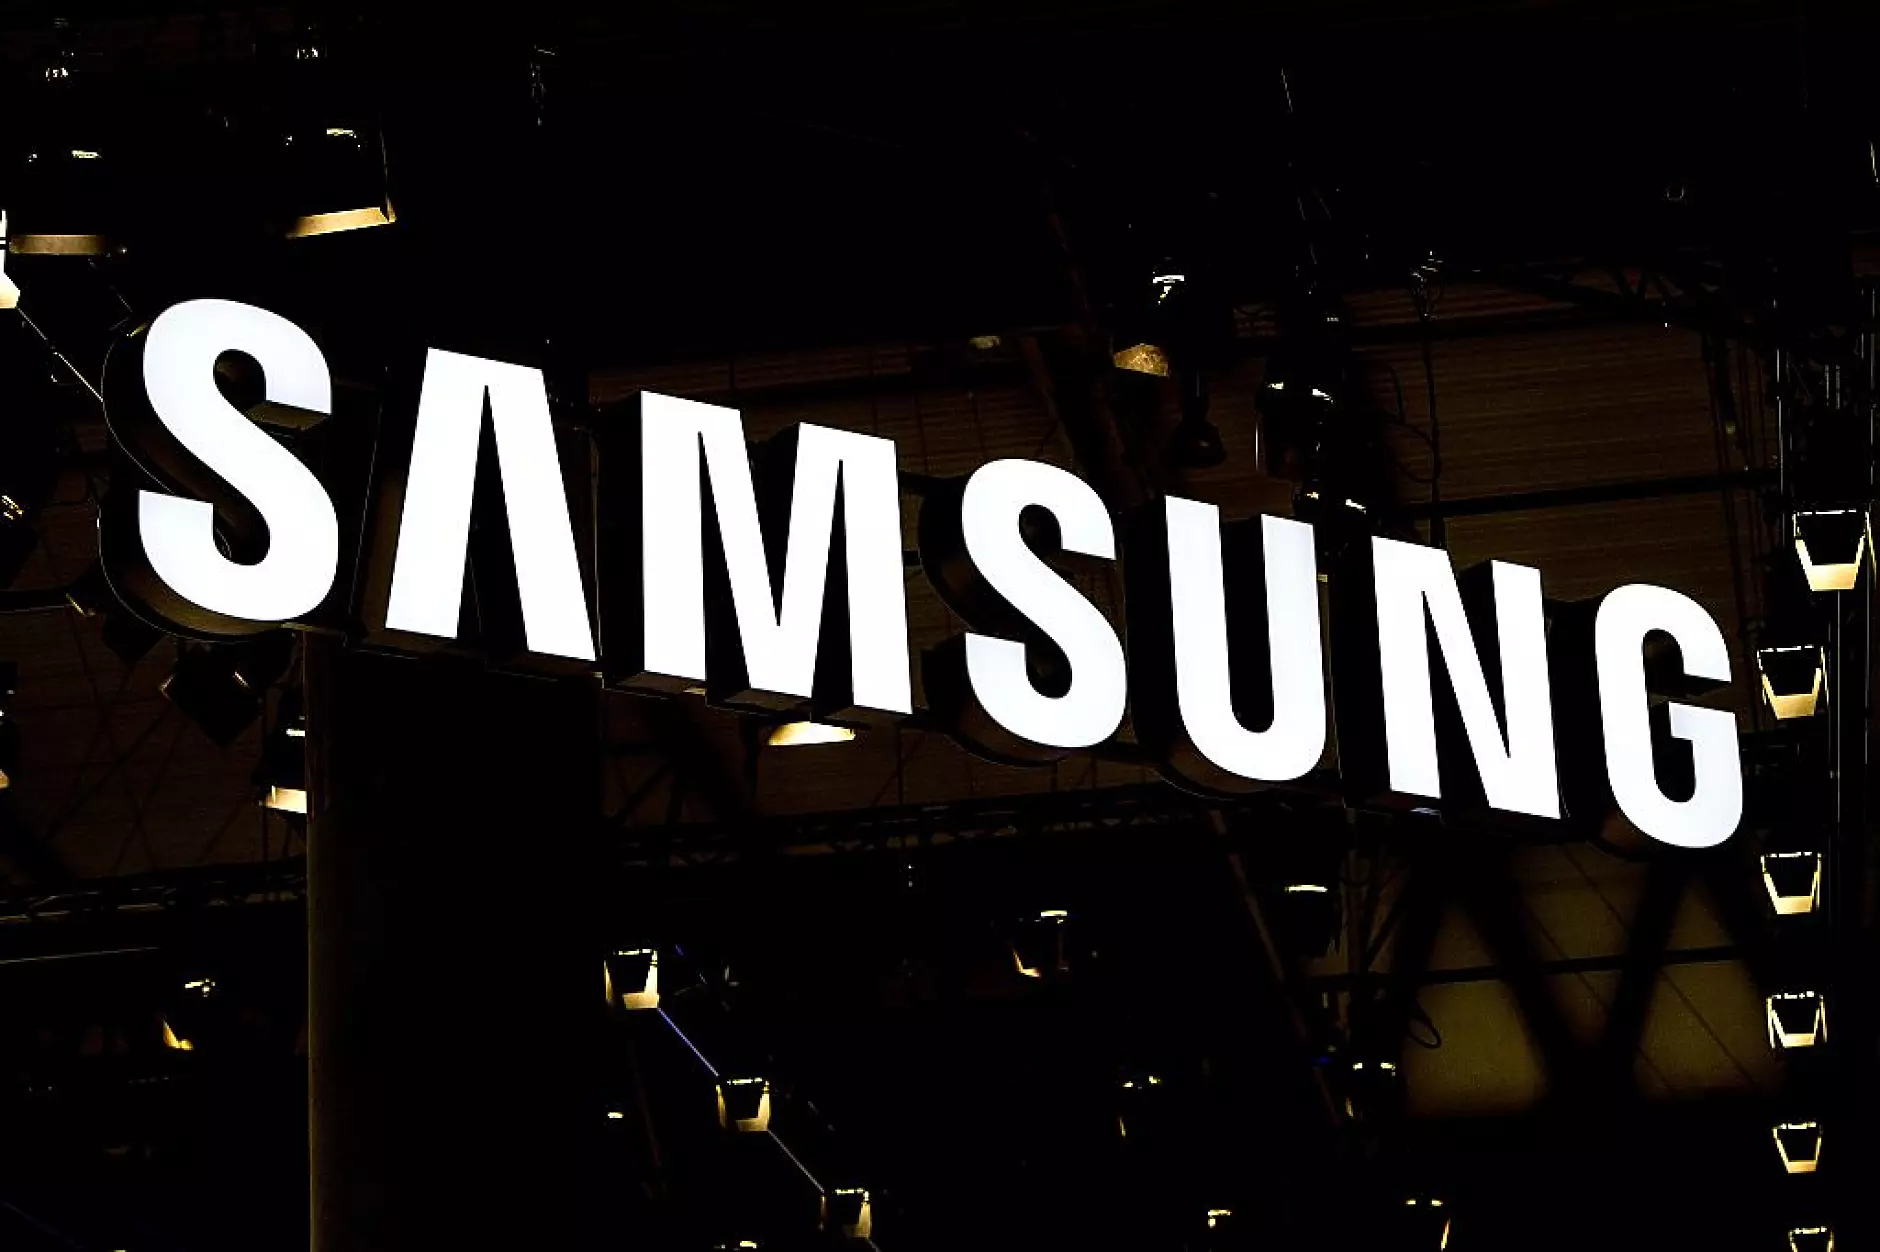 Samsung ще увеличи прозиводството на чипове в най-големия си завод през 2023 г. 